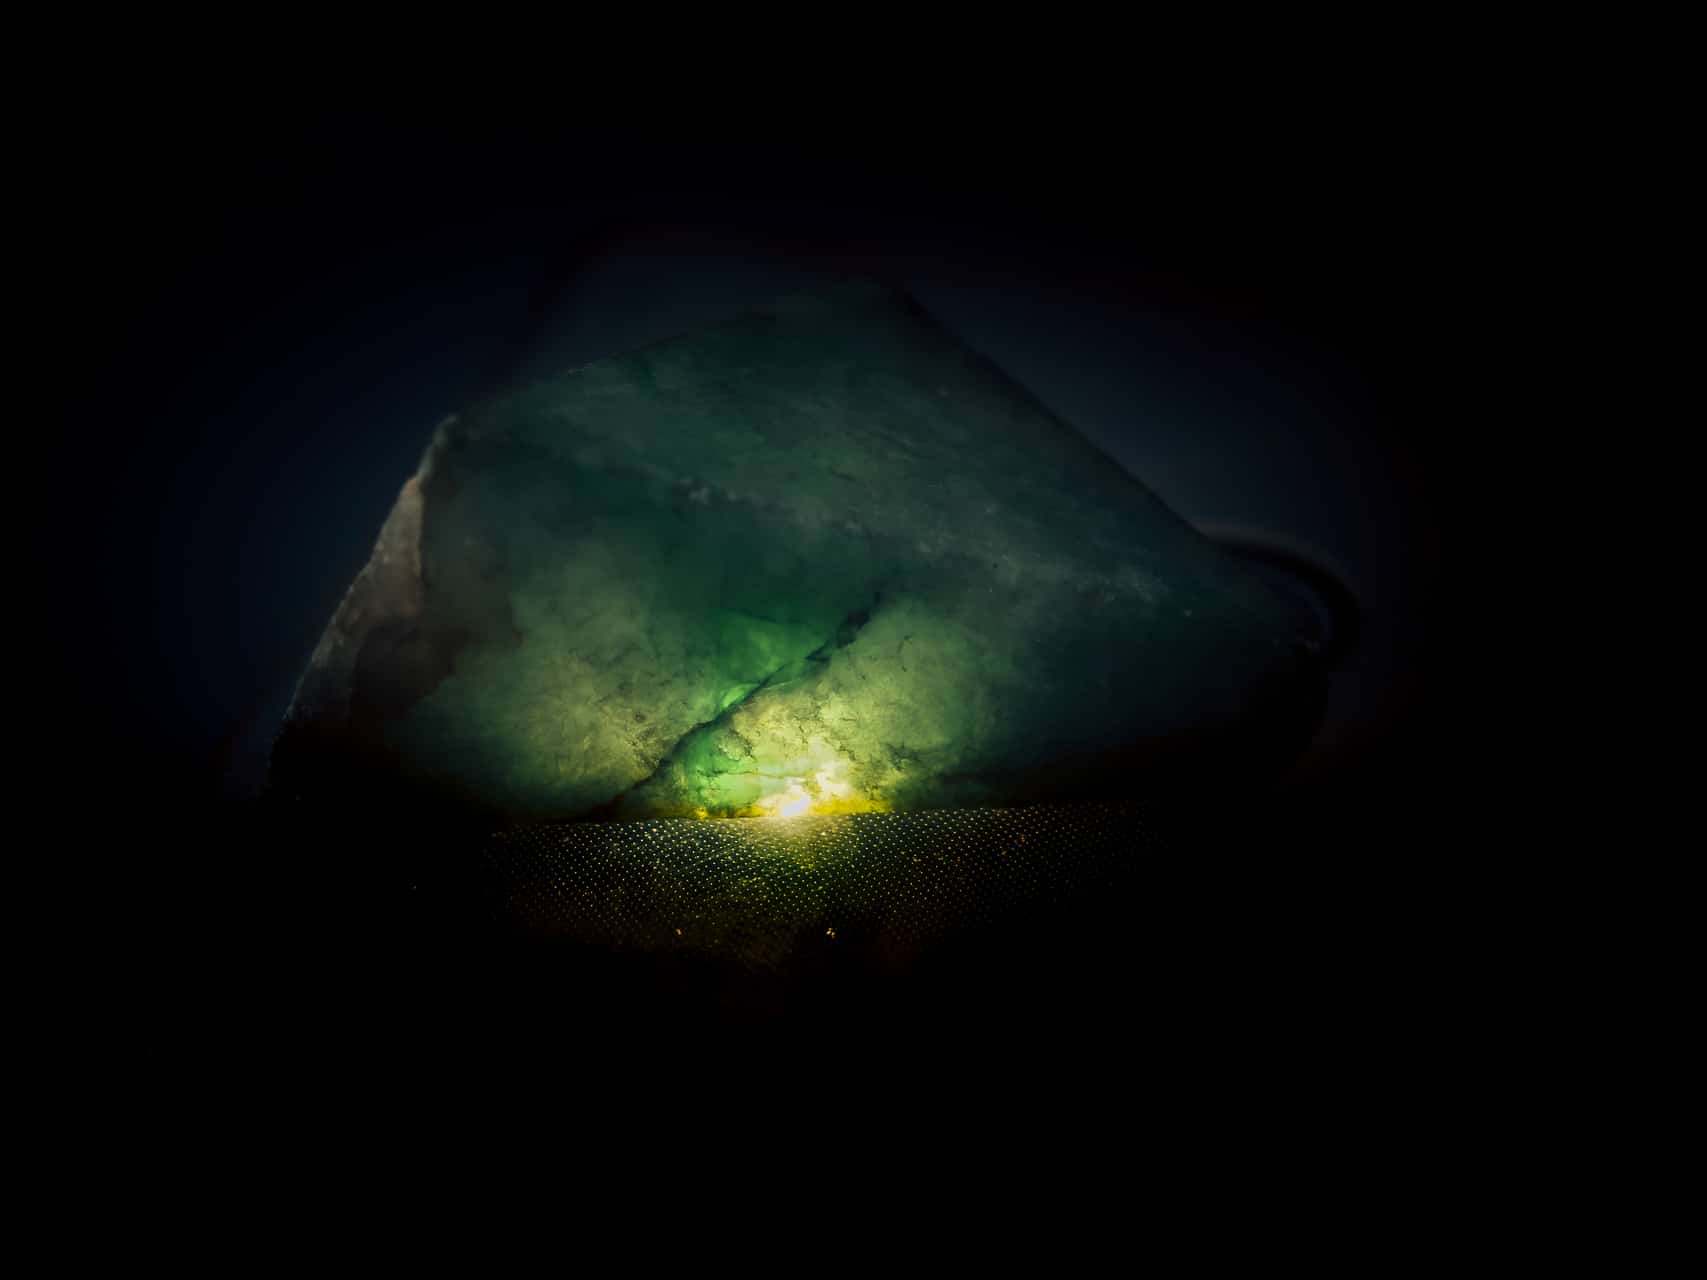 morceau de jade dont les nervures apparaissent sous la lumière